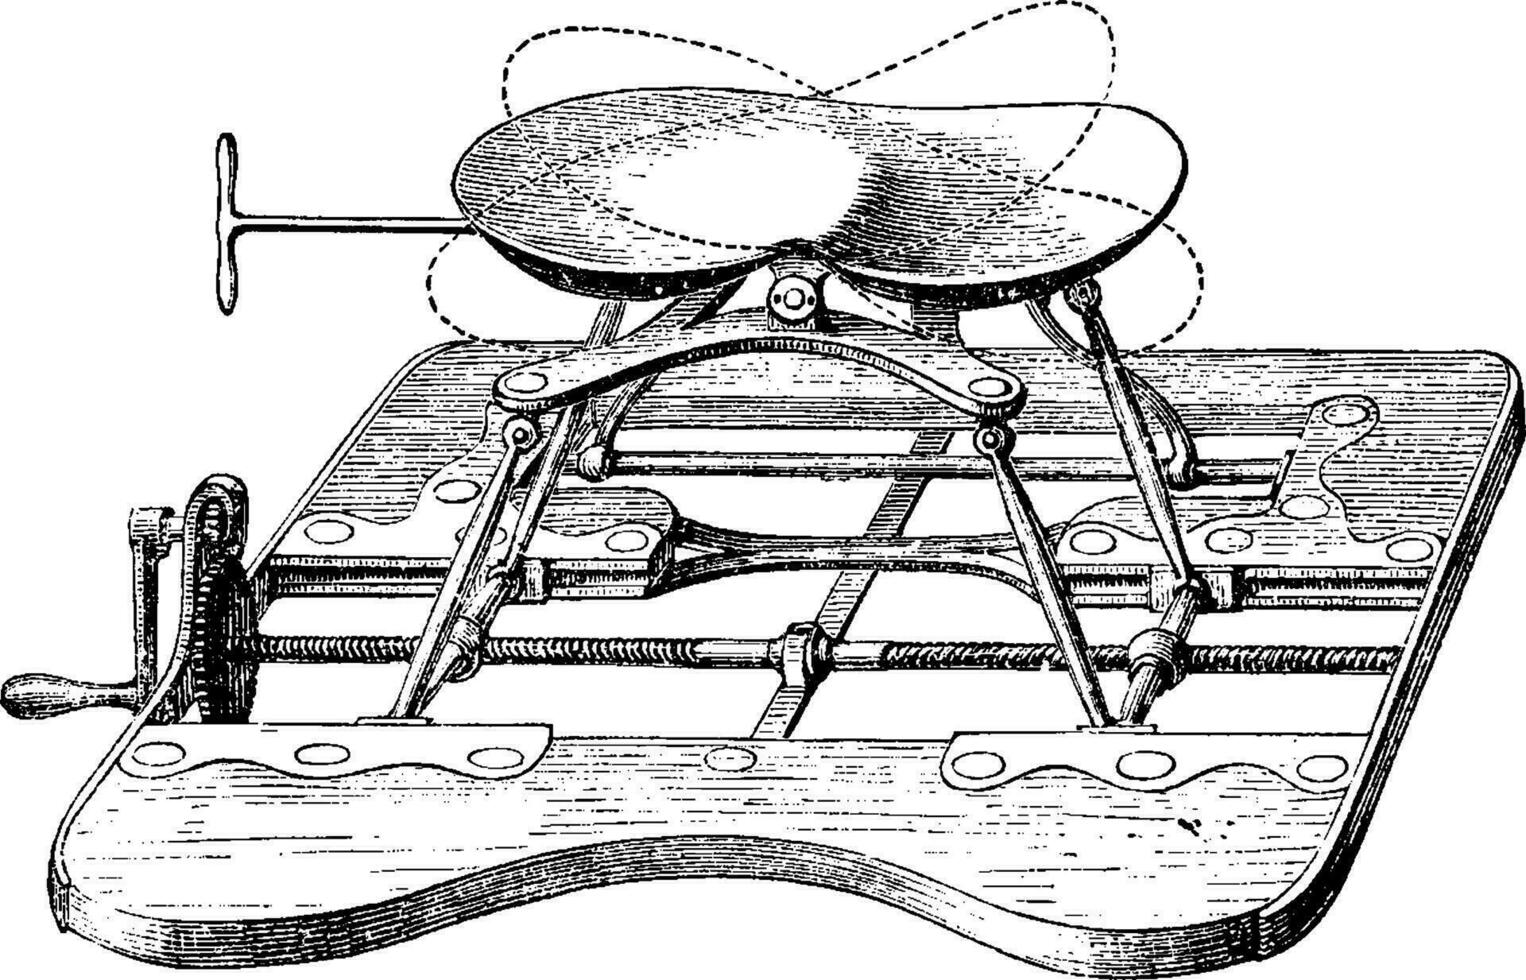 appareil pour lithotritie, le siège étant haut, ancien gravure vecteur